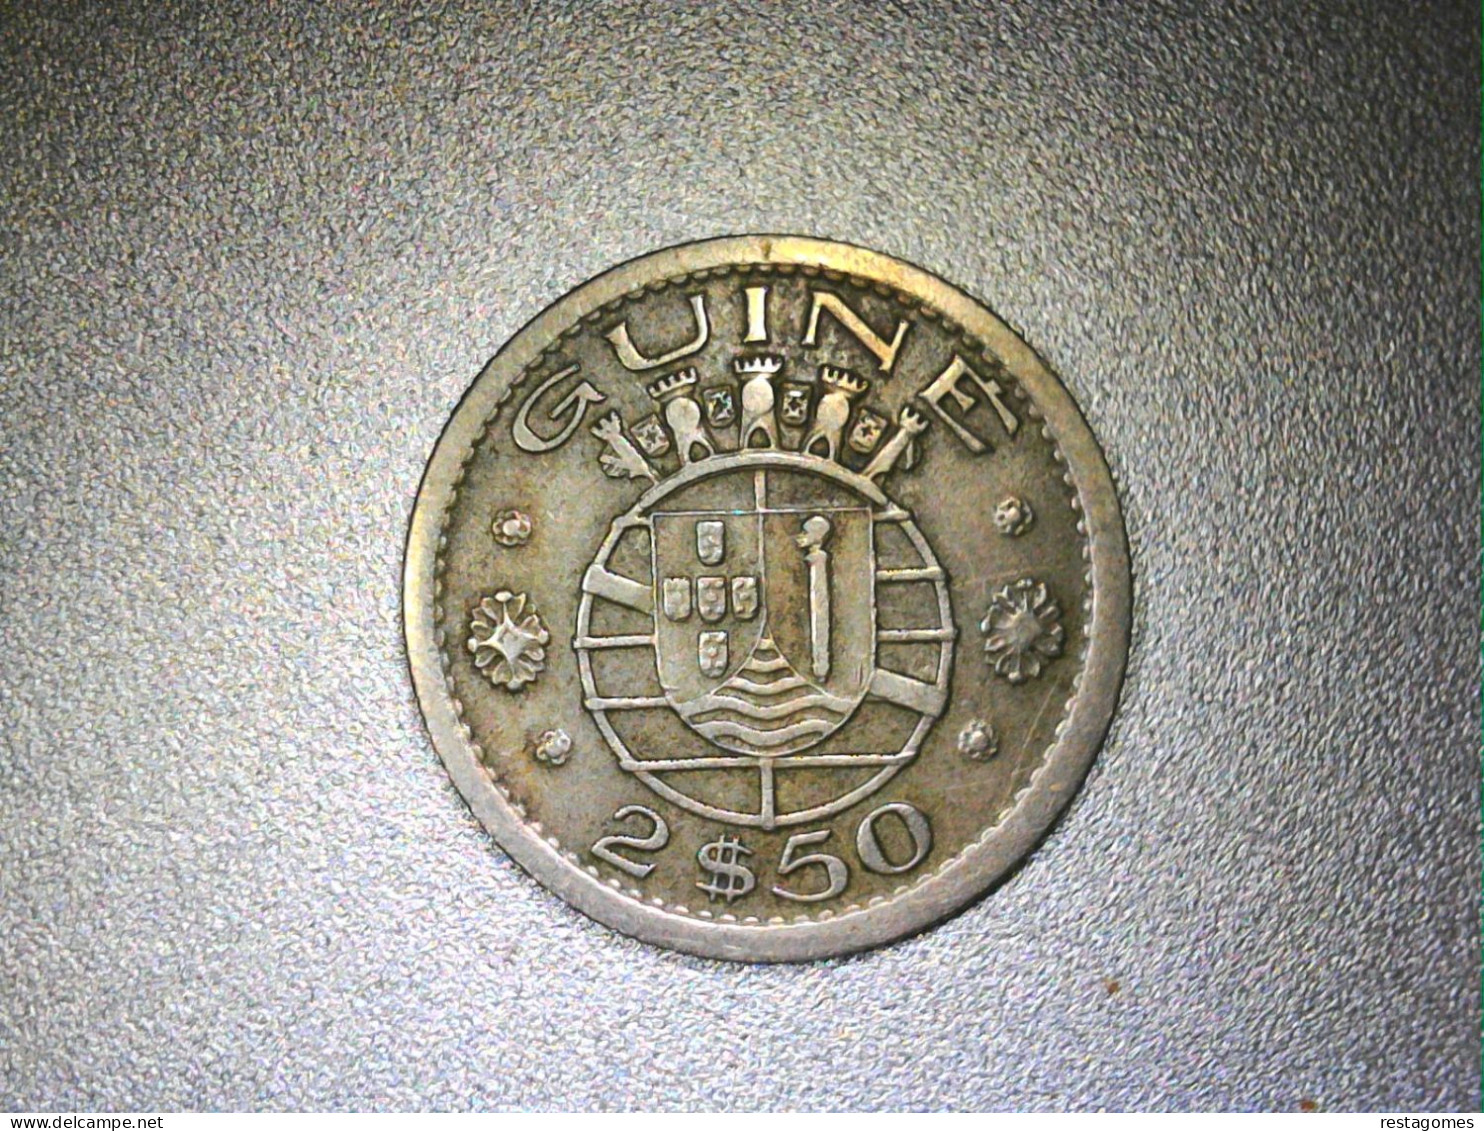 Guiné 2,5 Escudos 1952 - Guinea Bissau